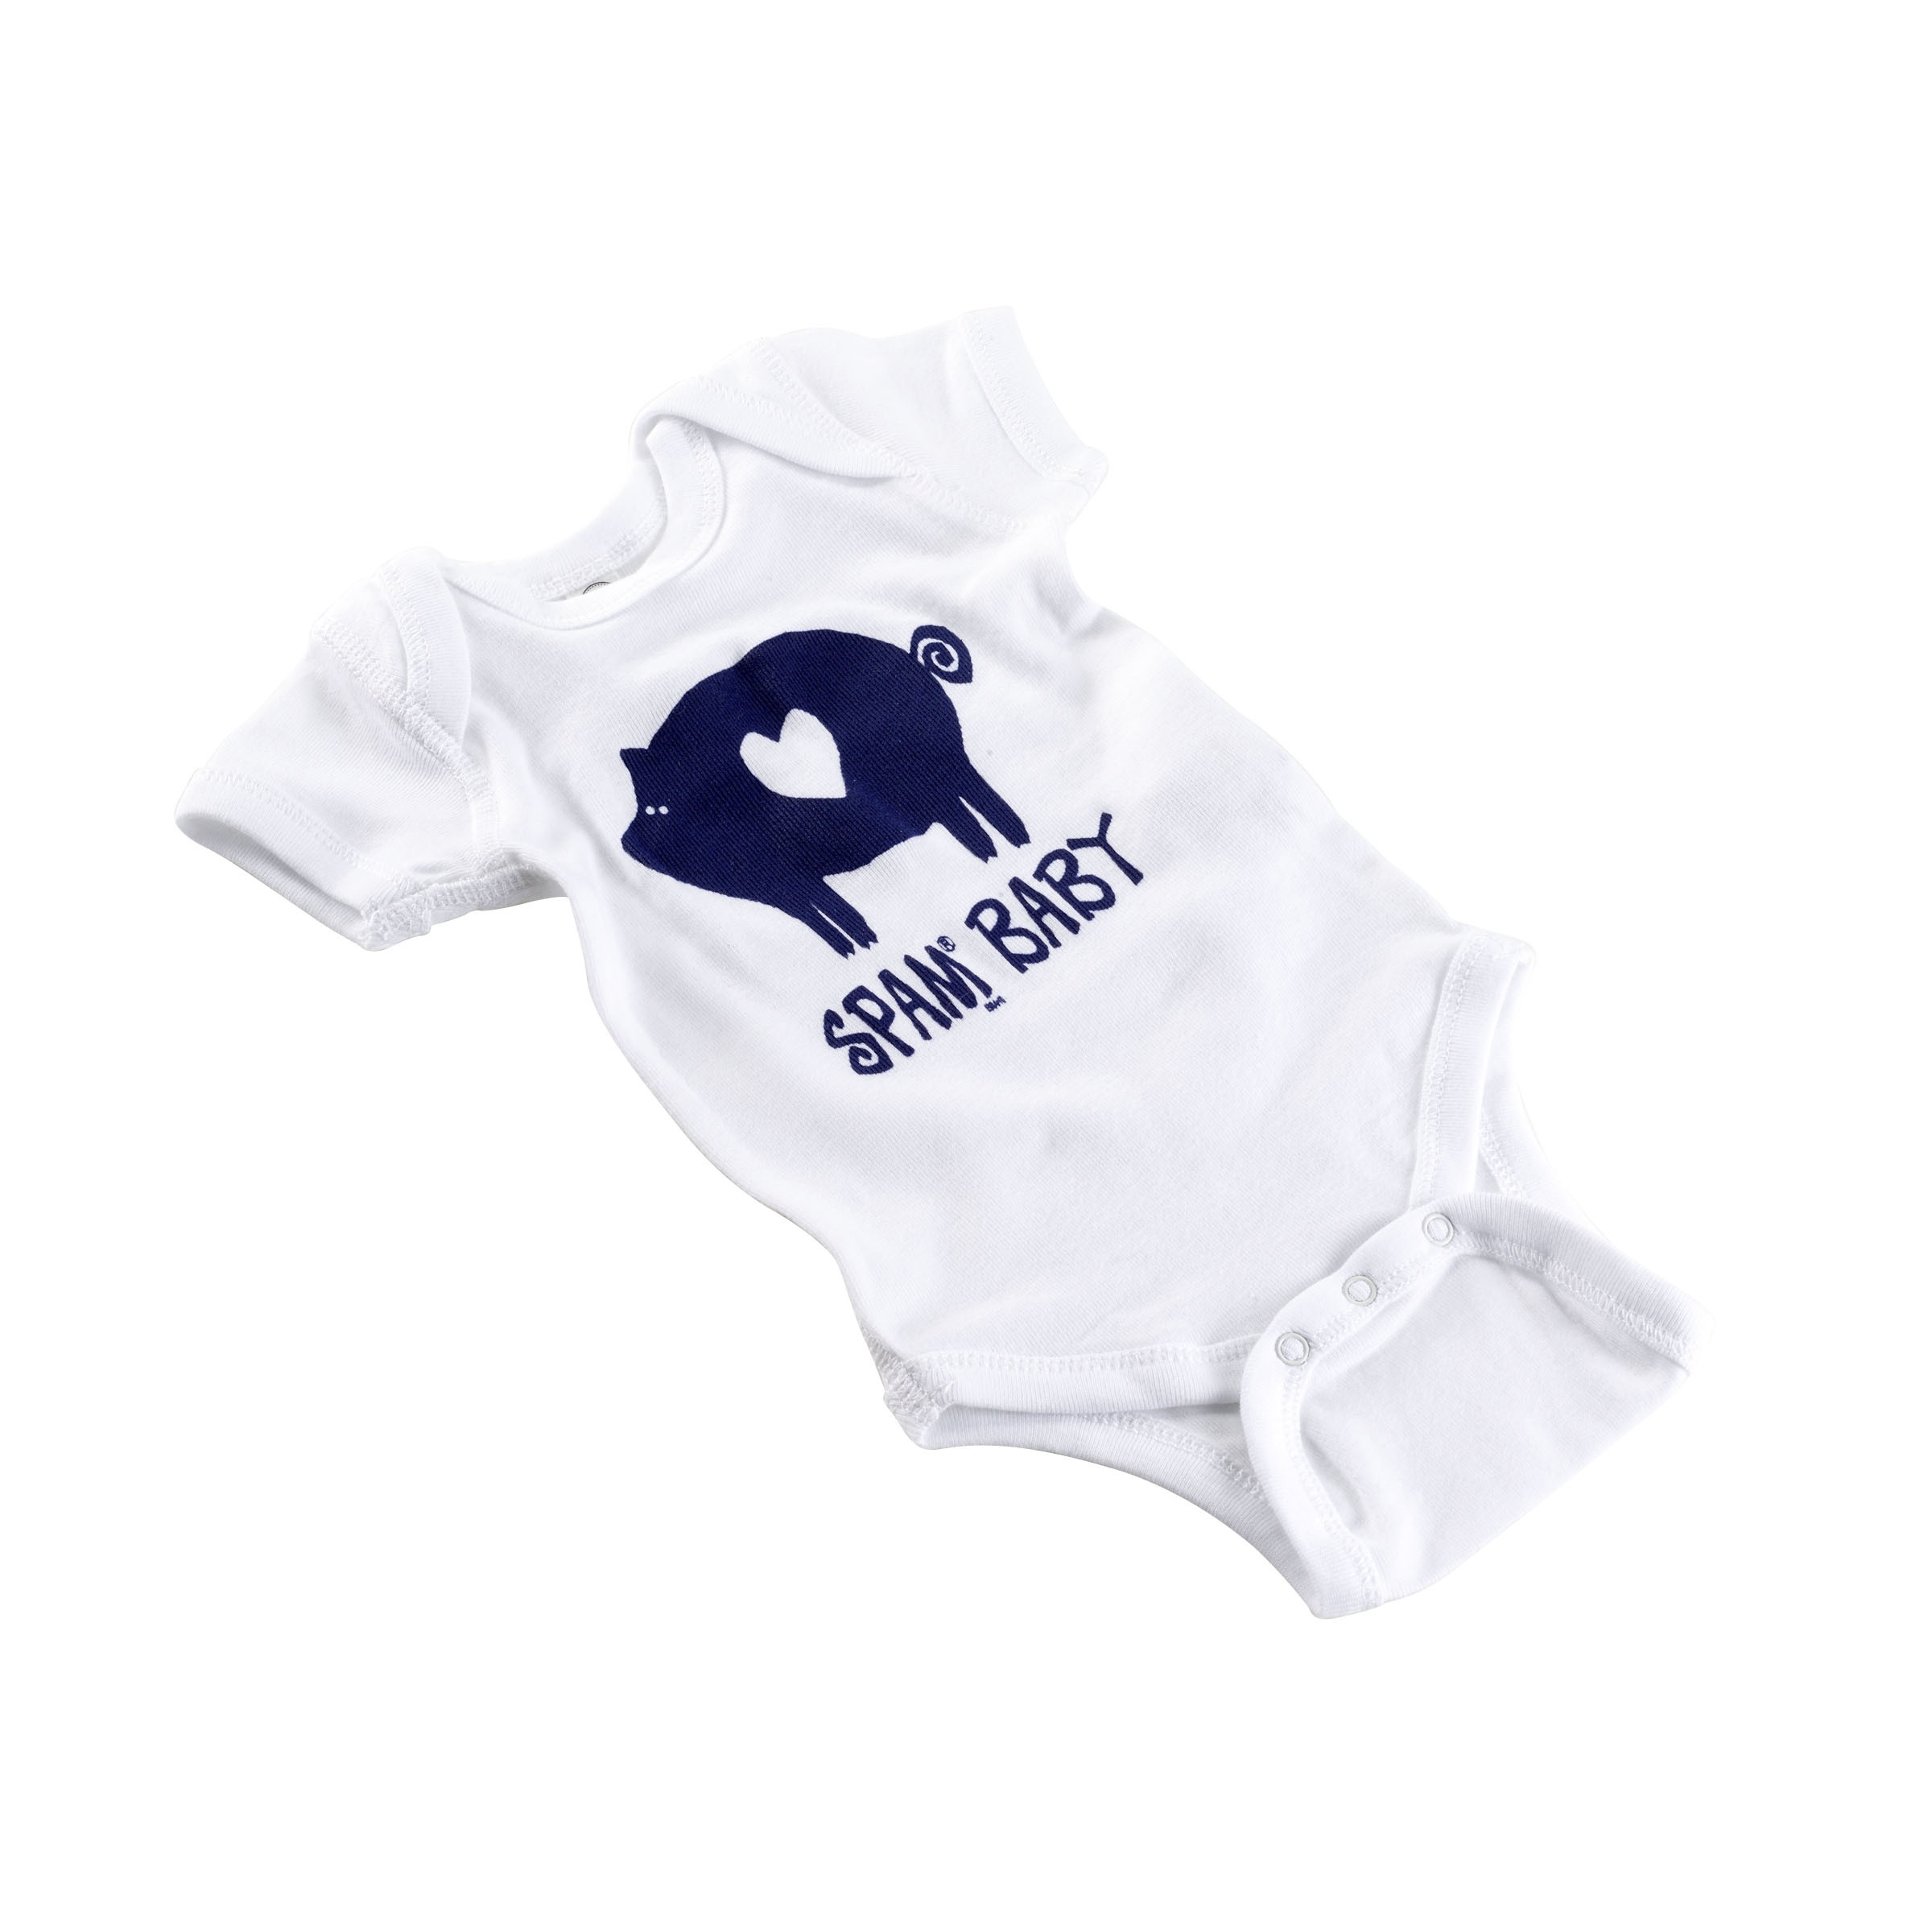 Newborn baby bodysuit